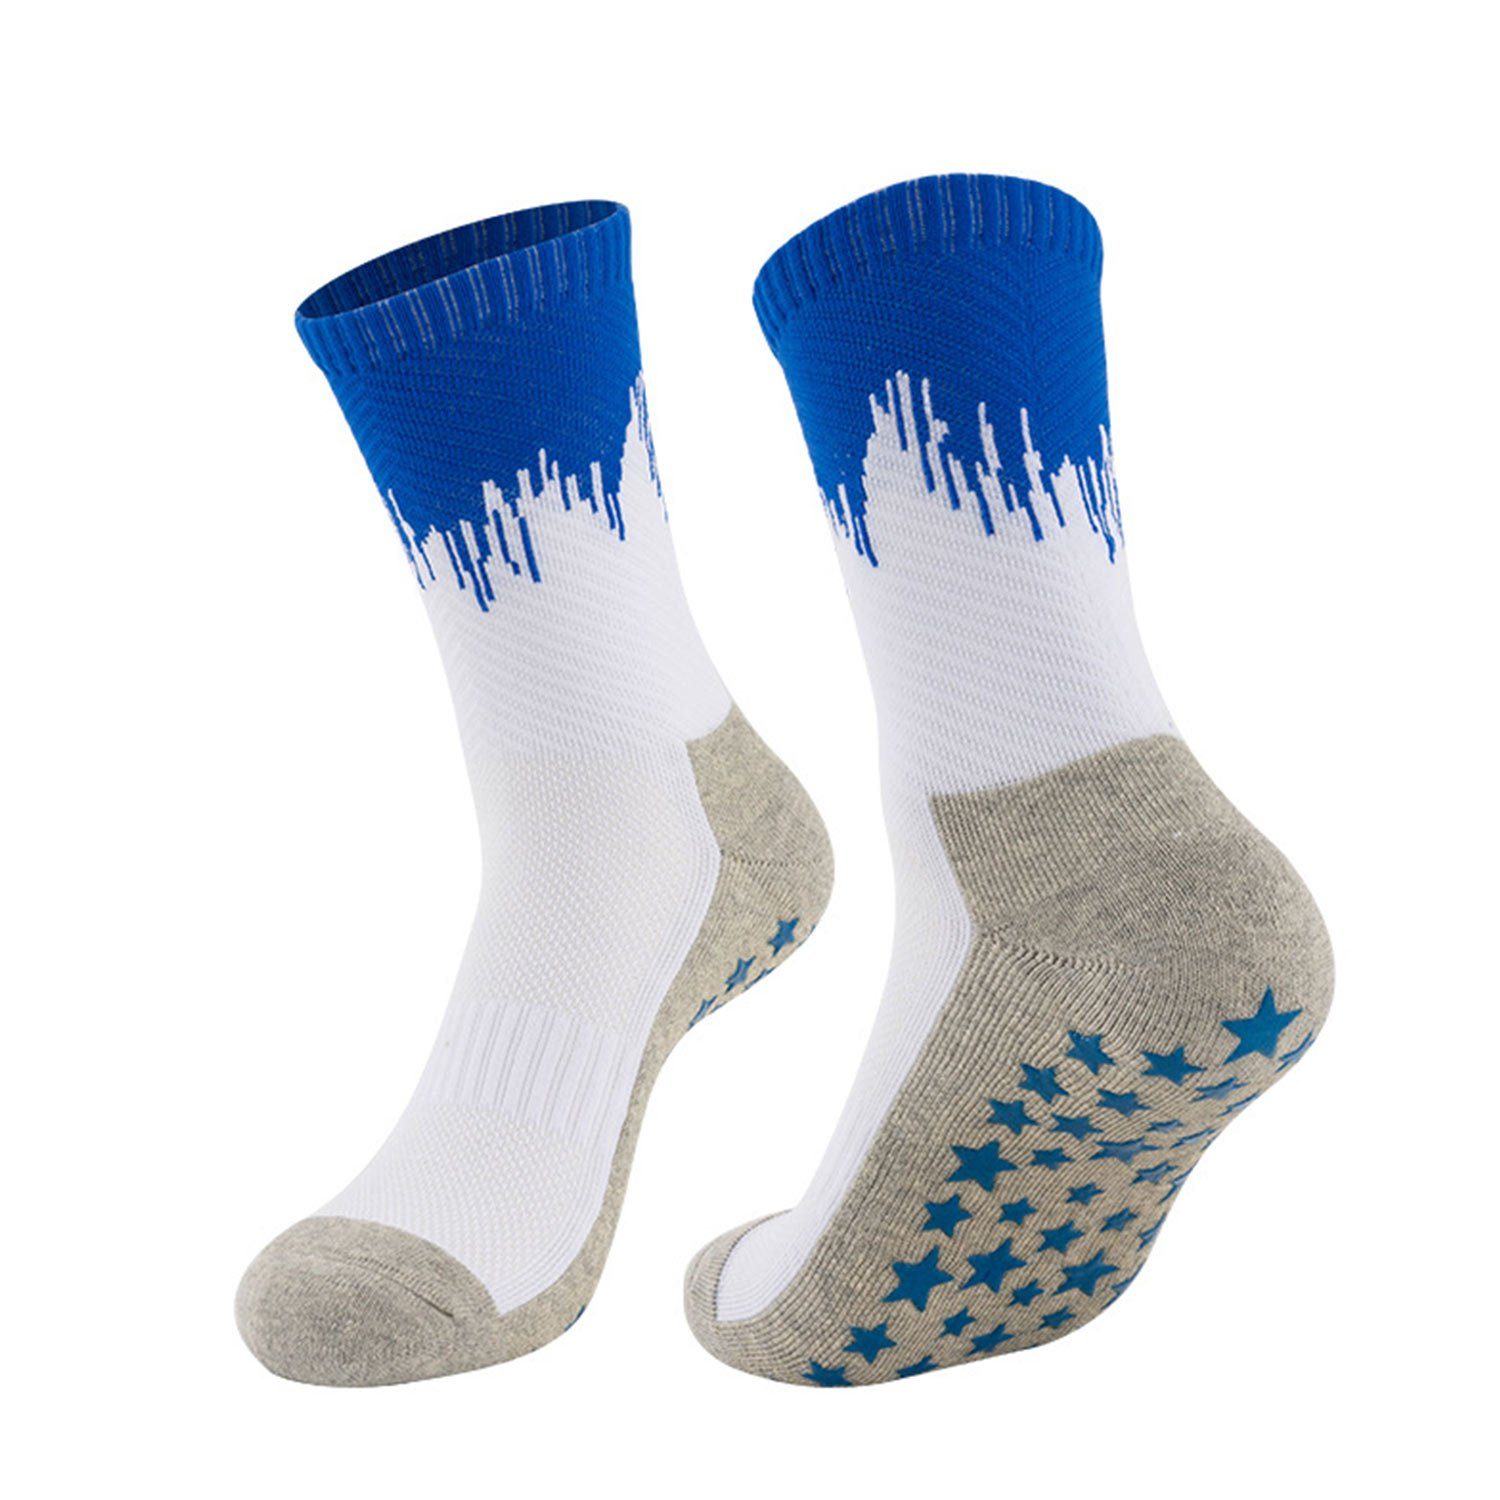 MAGICSHE Kniestrümpfe Fußballsocken für Erwachsene mit Gewindebündchen Verdickter Handtuchboden für sportlichen Schutz der Füße Weiß Blau